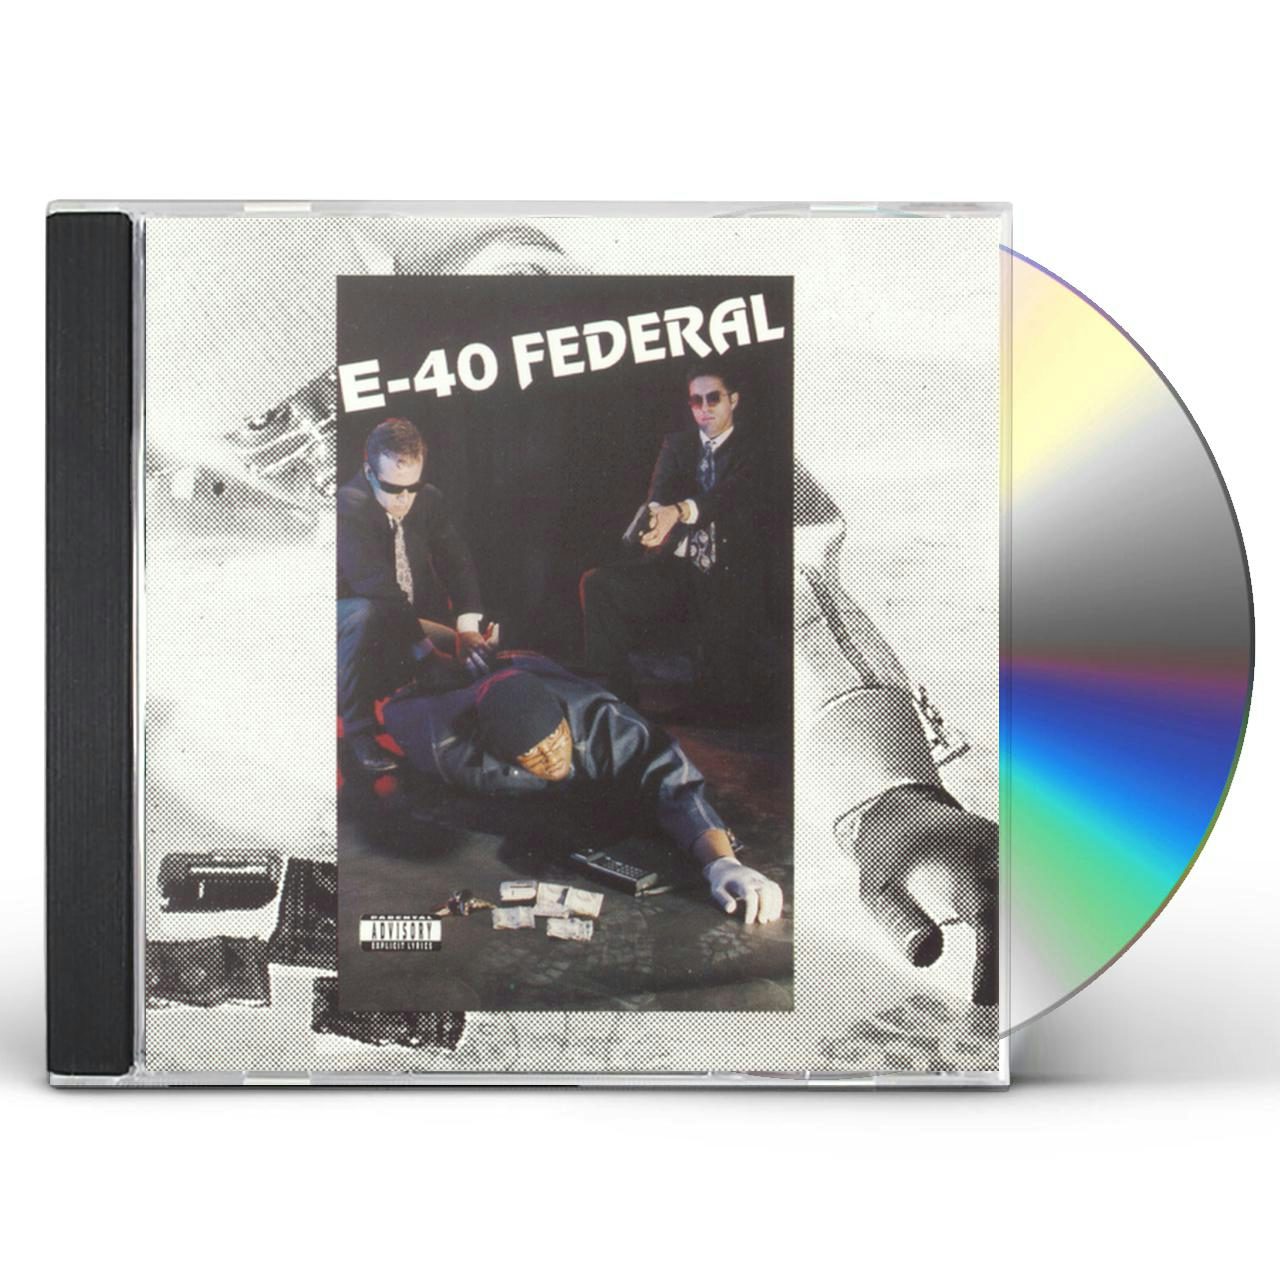 E-40 FEDERAL CD